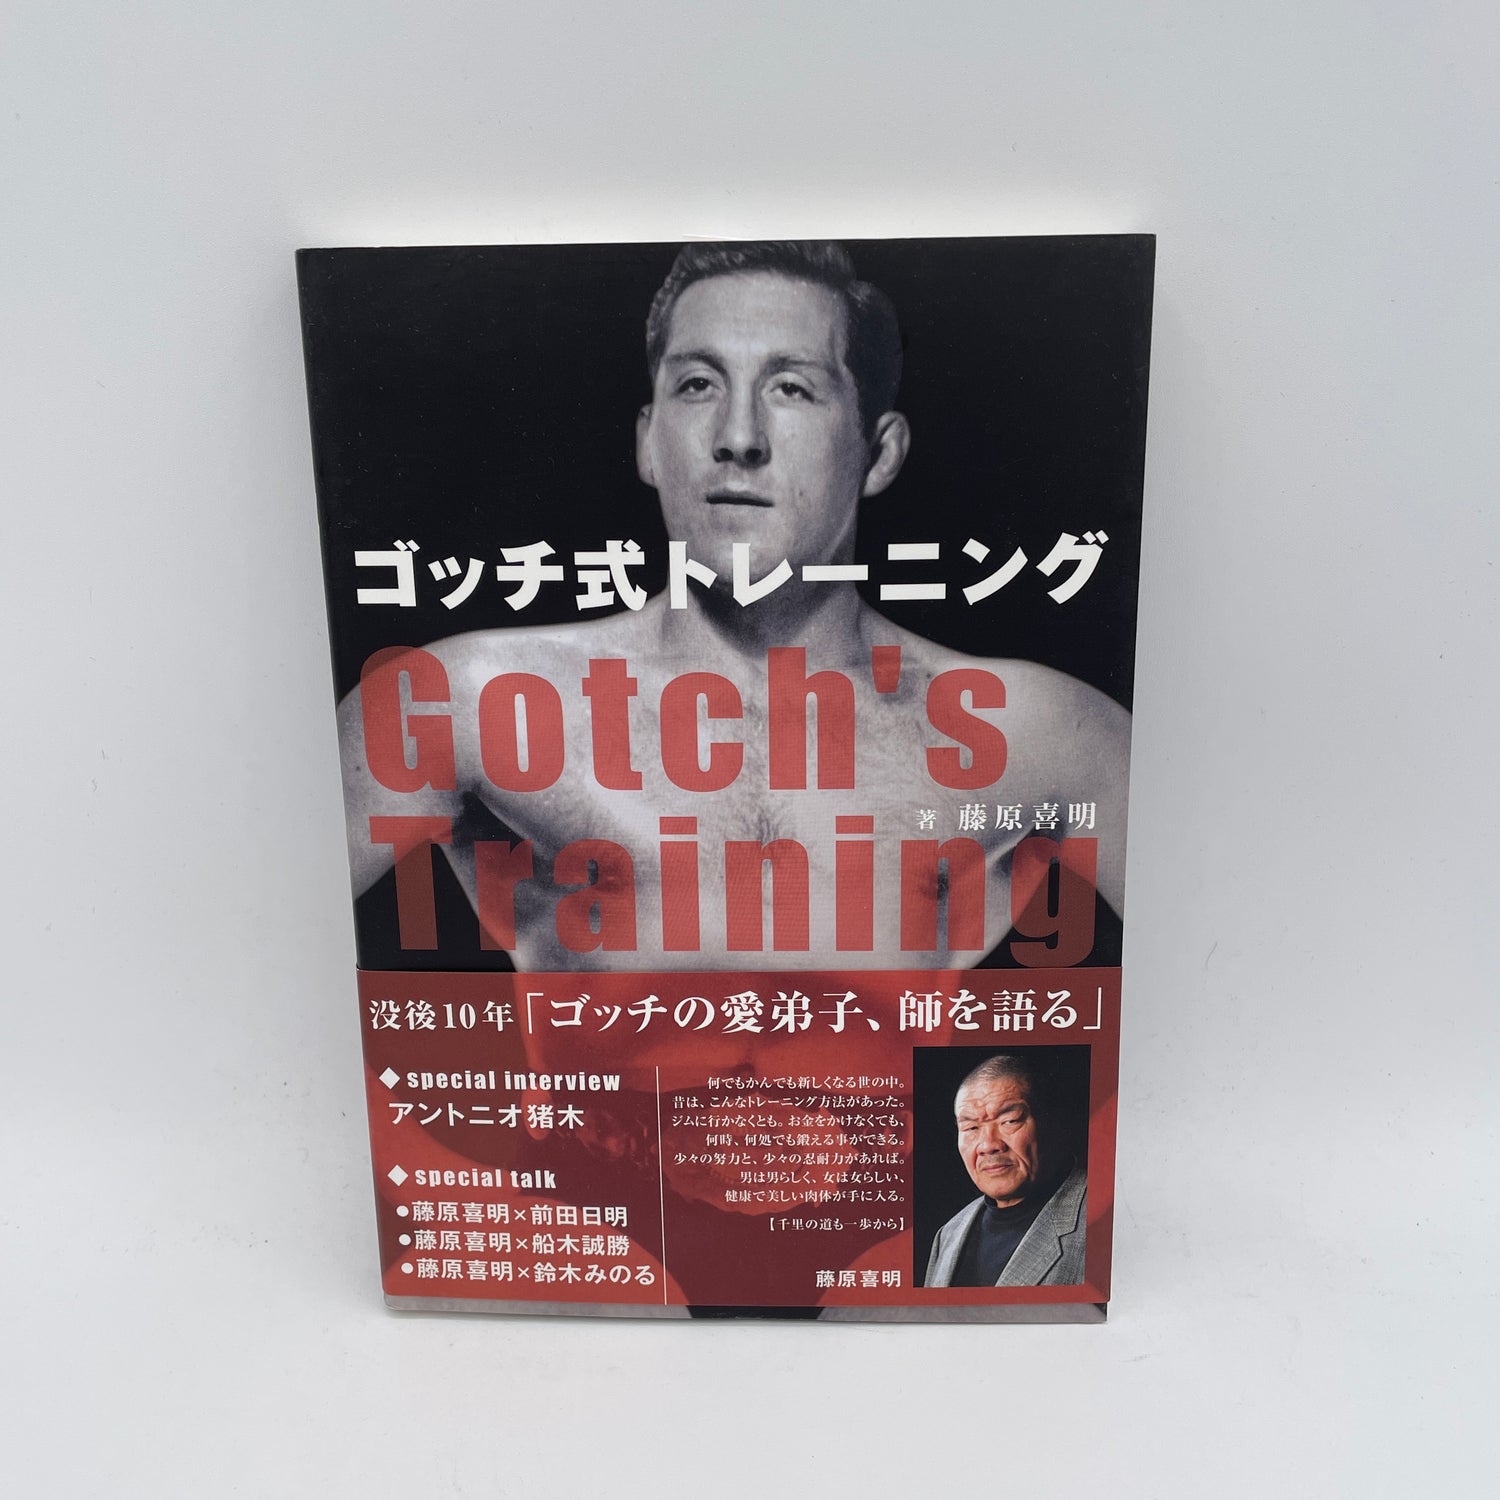 Libro de entrenamiento de Karl Gotch por Yoshiaki Fujiwara